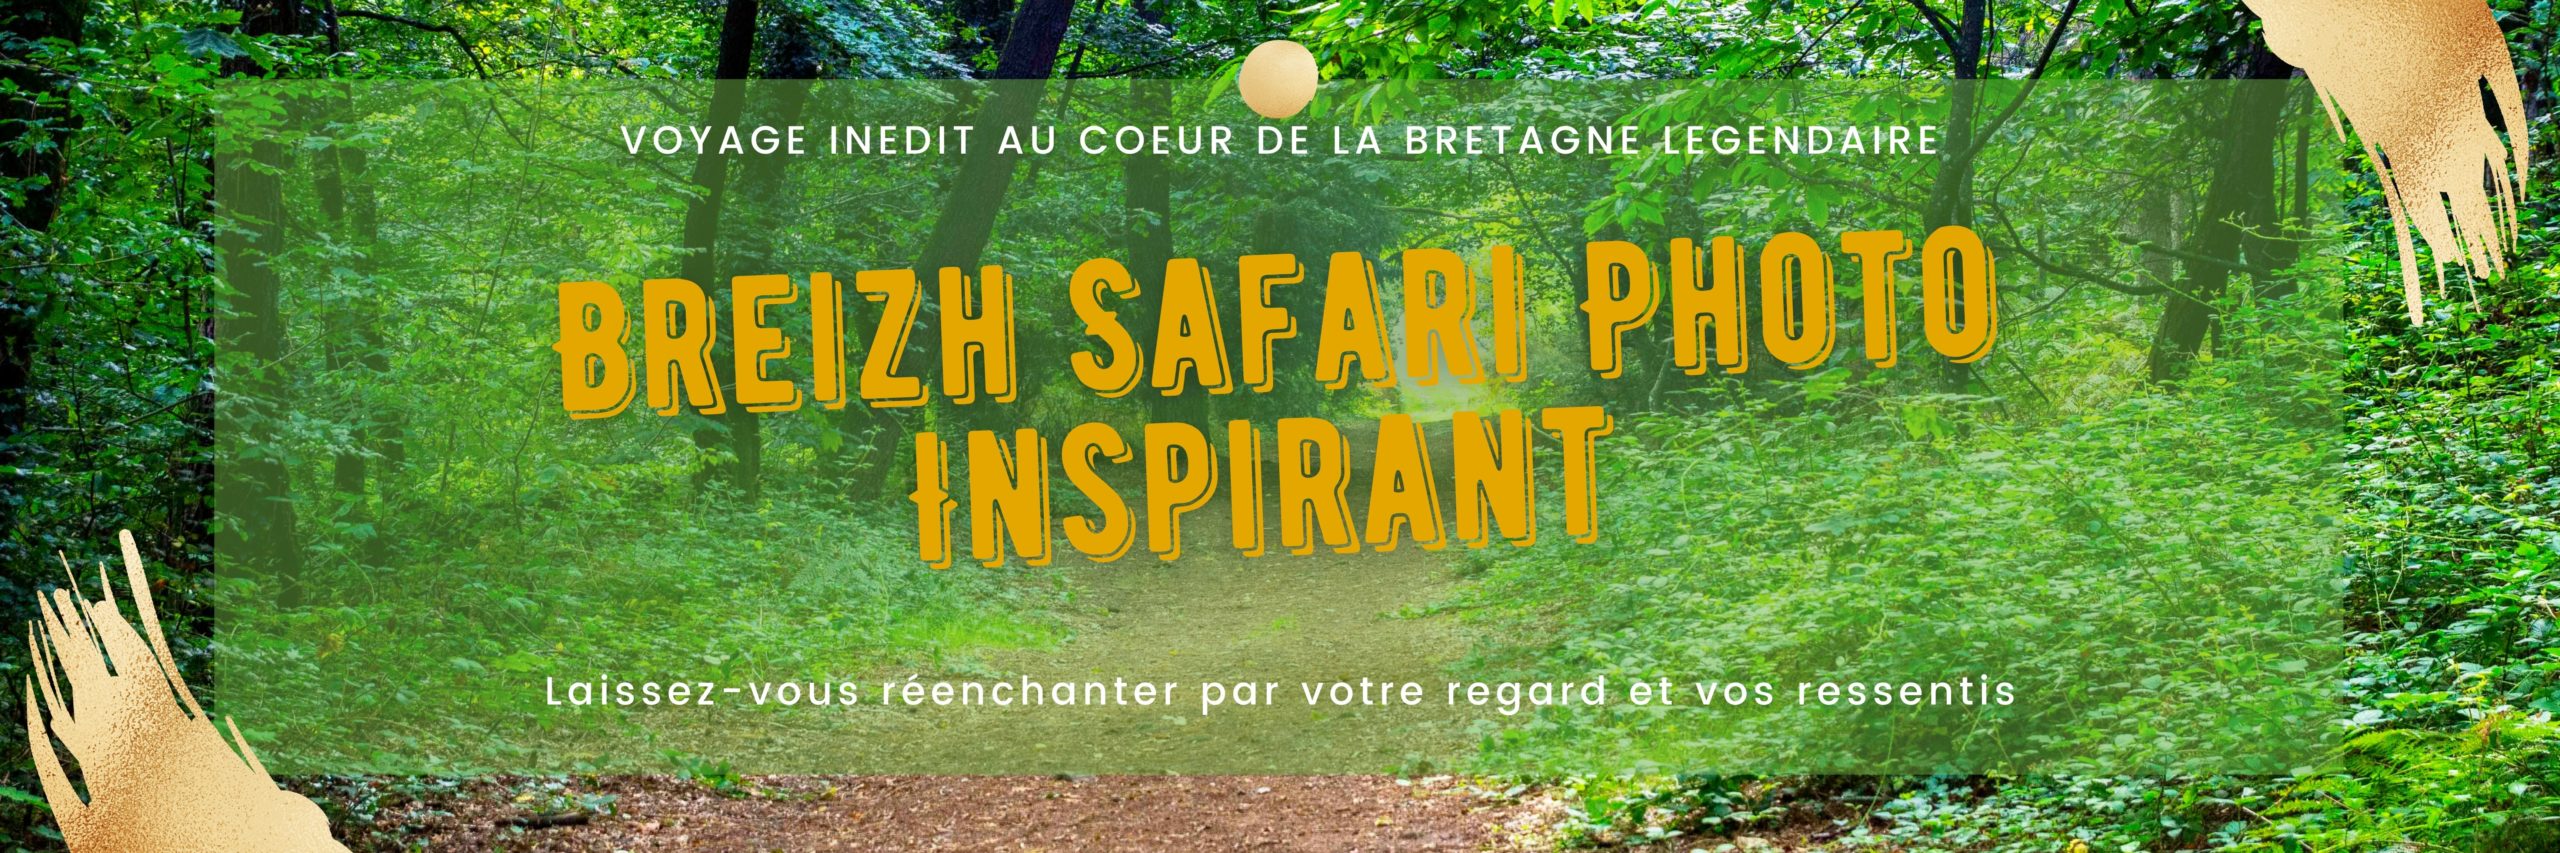 Breizh Safari Photo Inspirant bretagne morbihan, céline vincent, guy coste, bannière